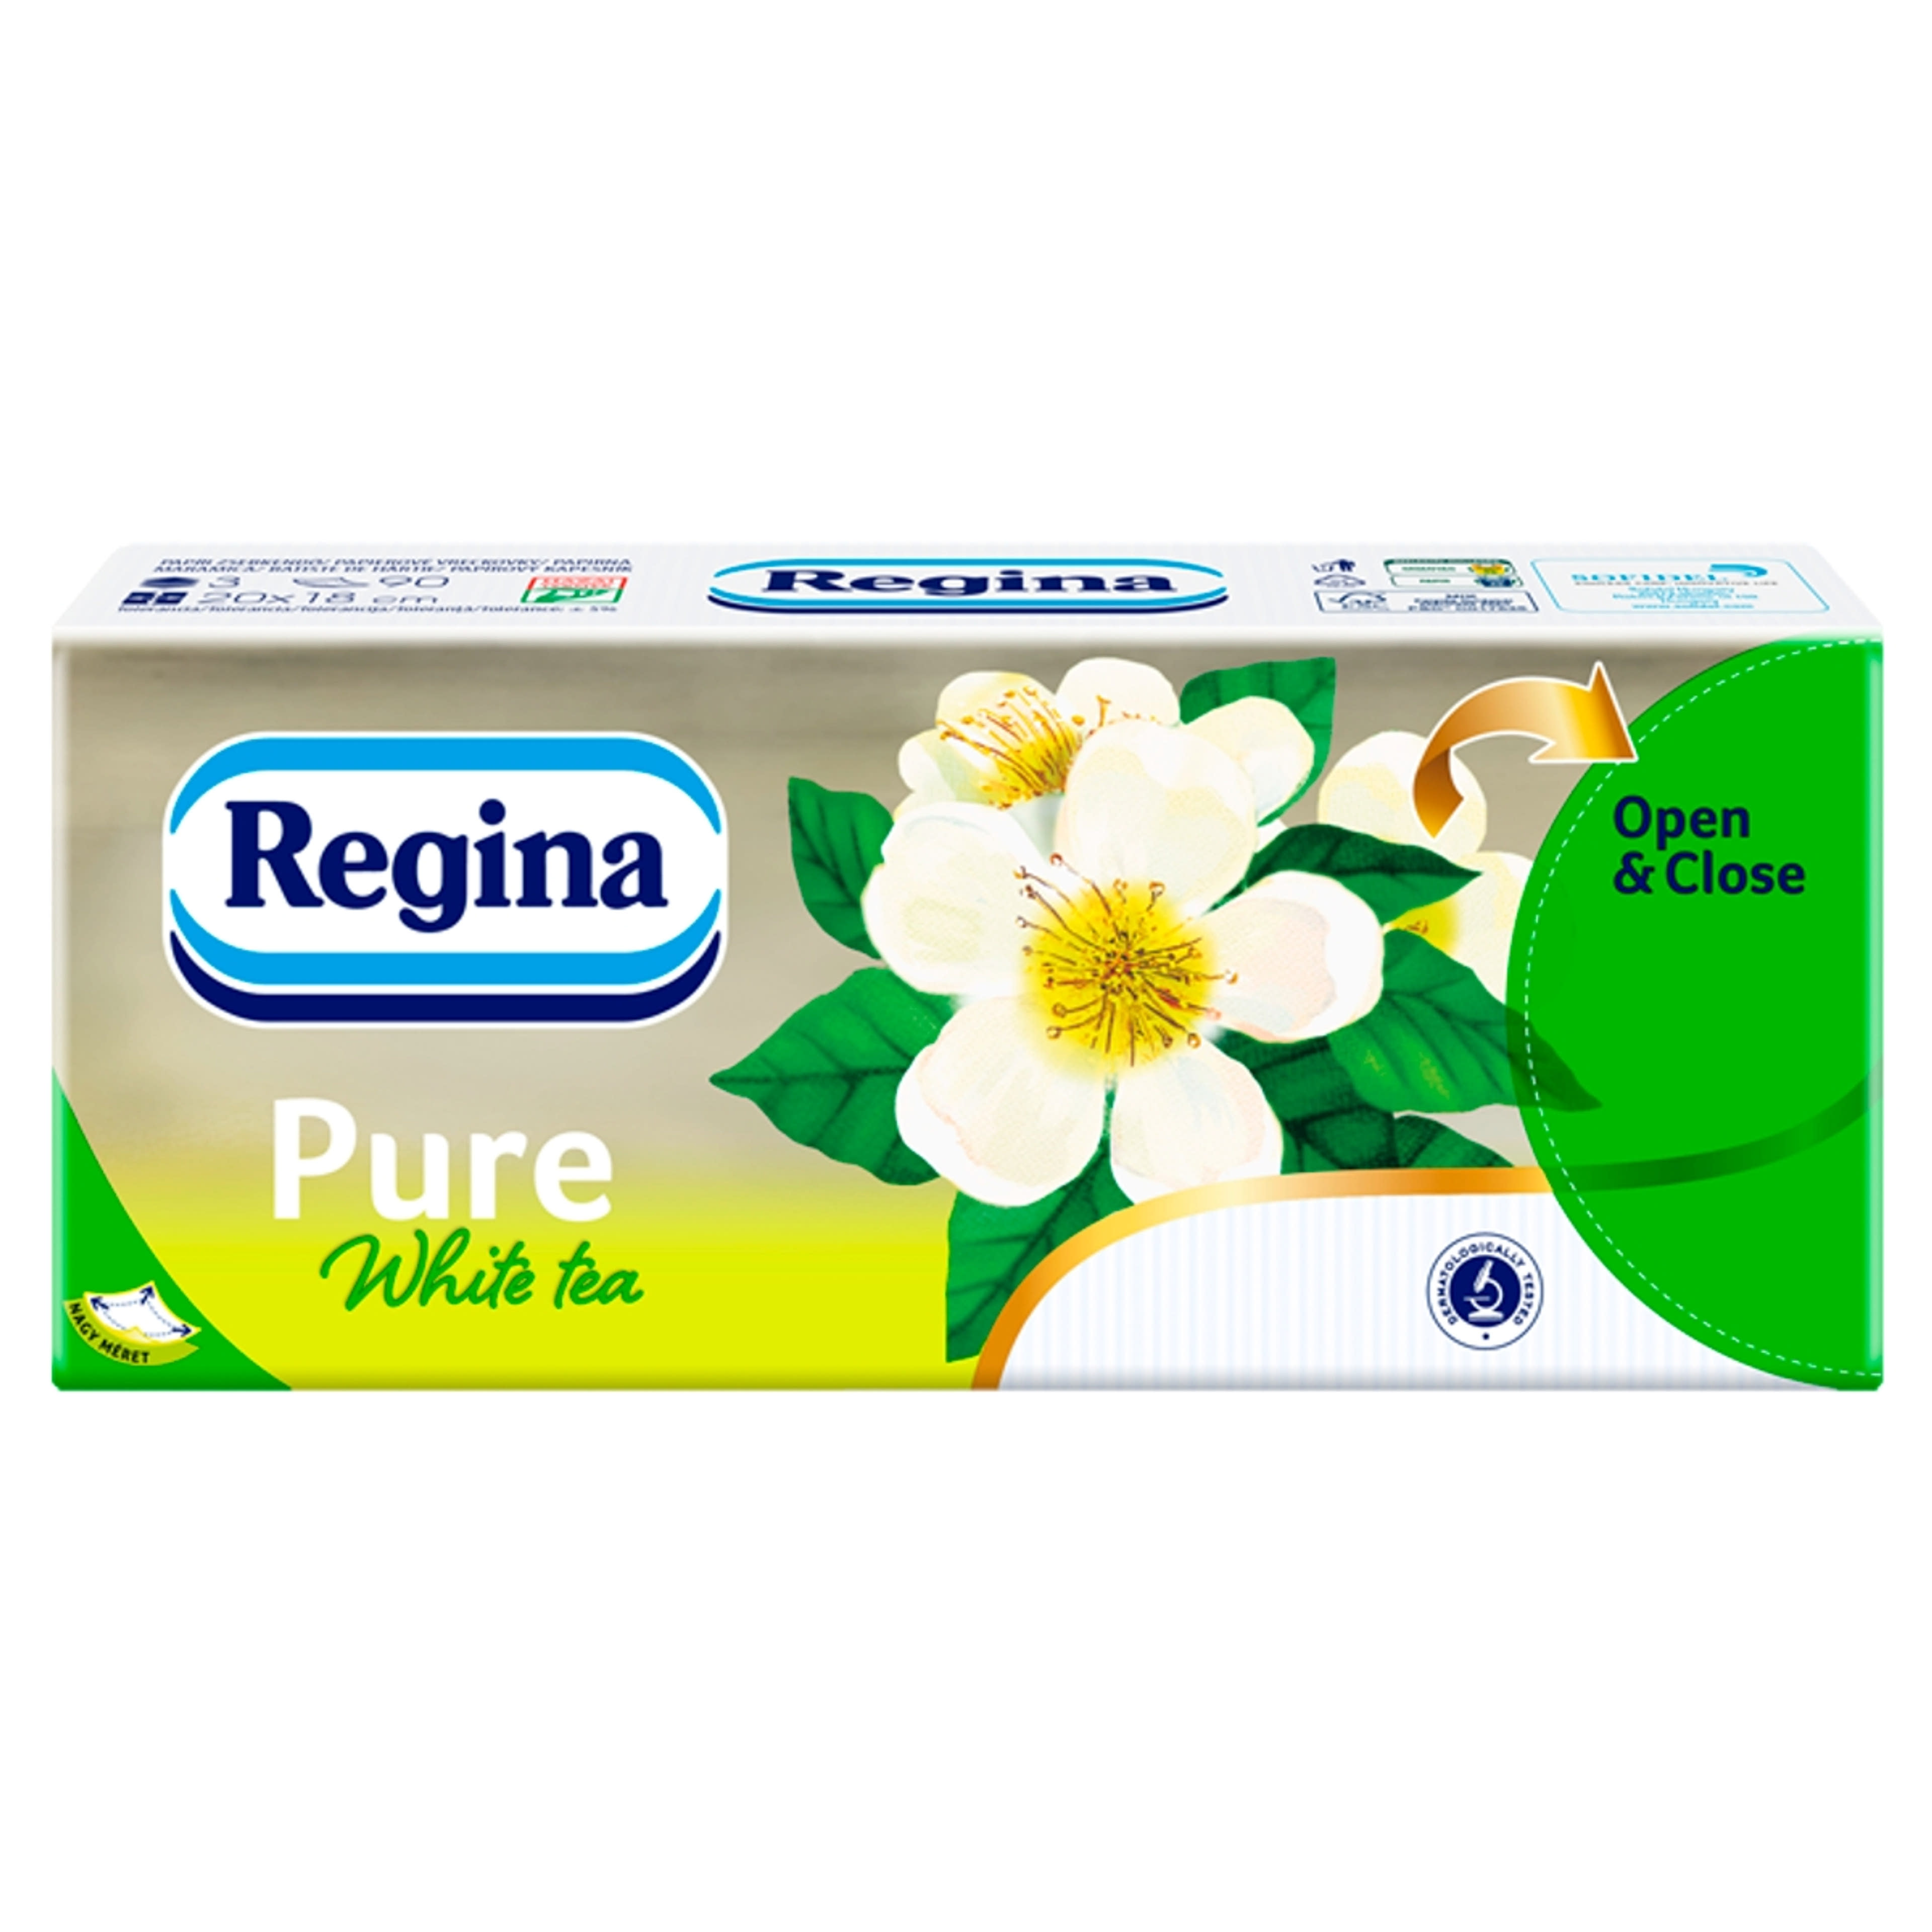 Regina papírzsebkendő pure white tea 3 rétegű - 1 db